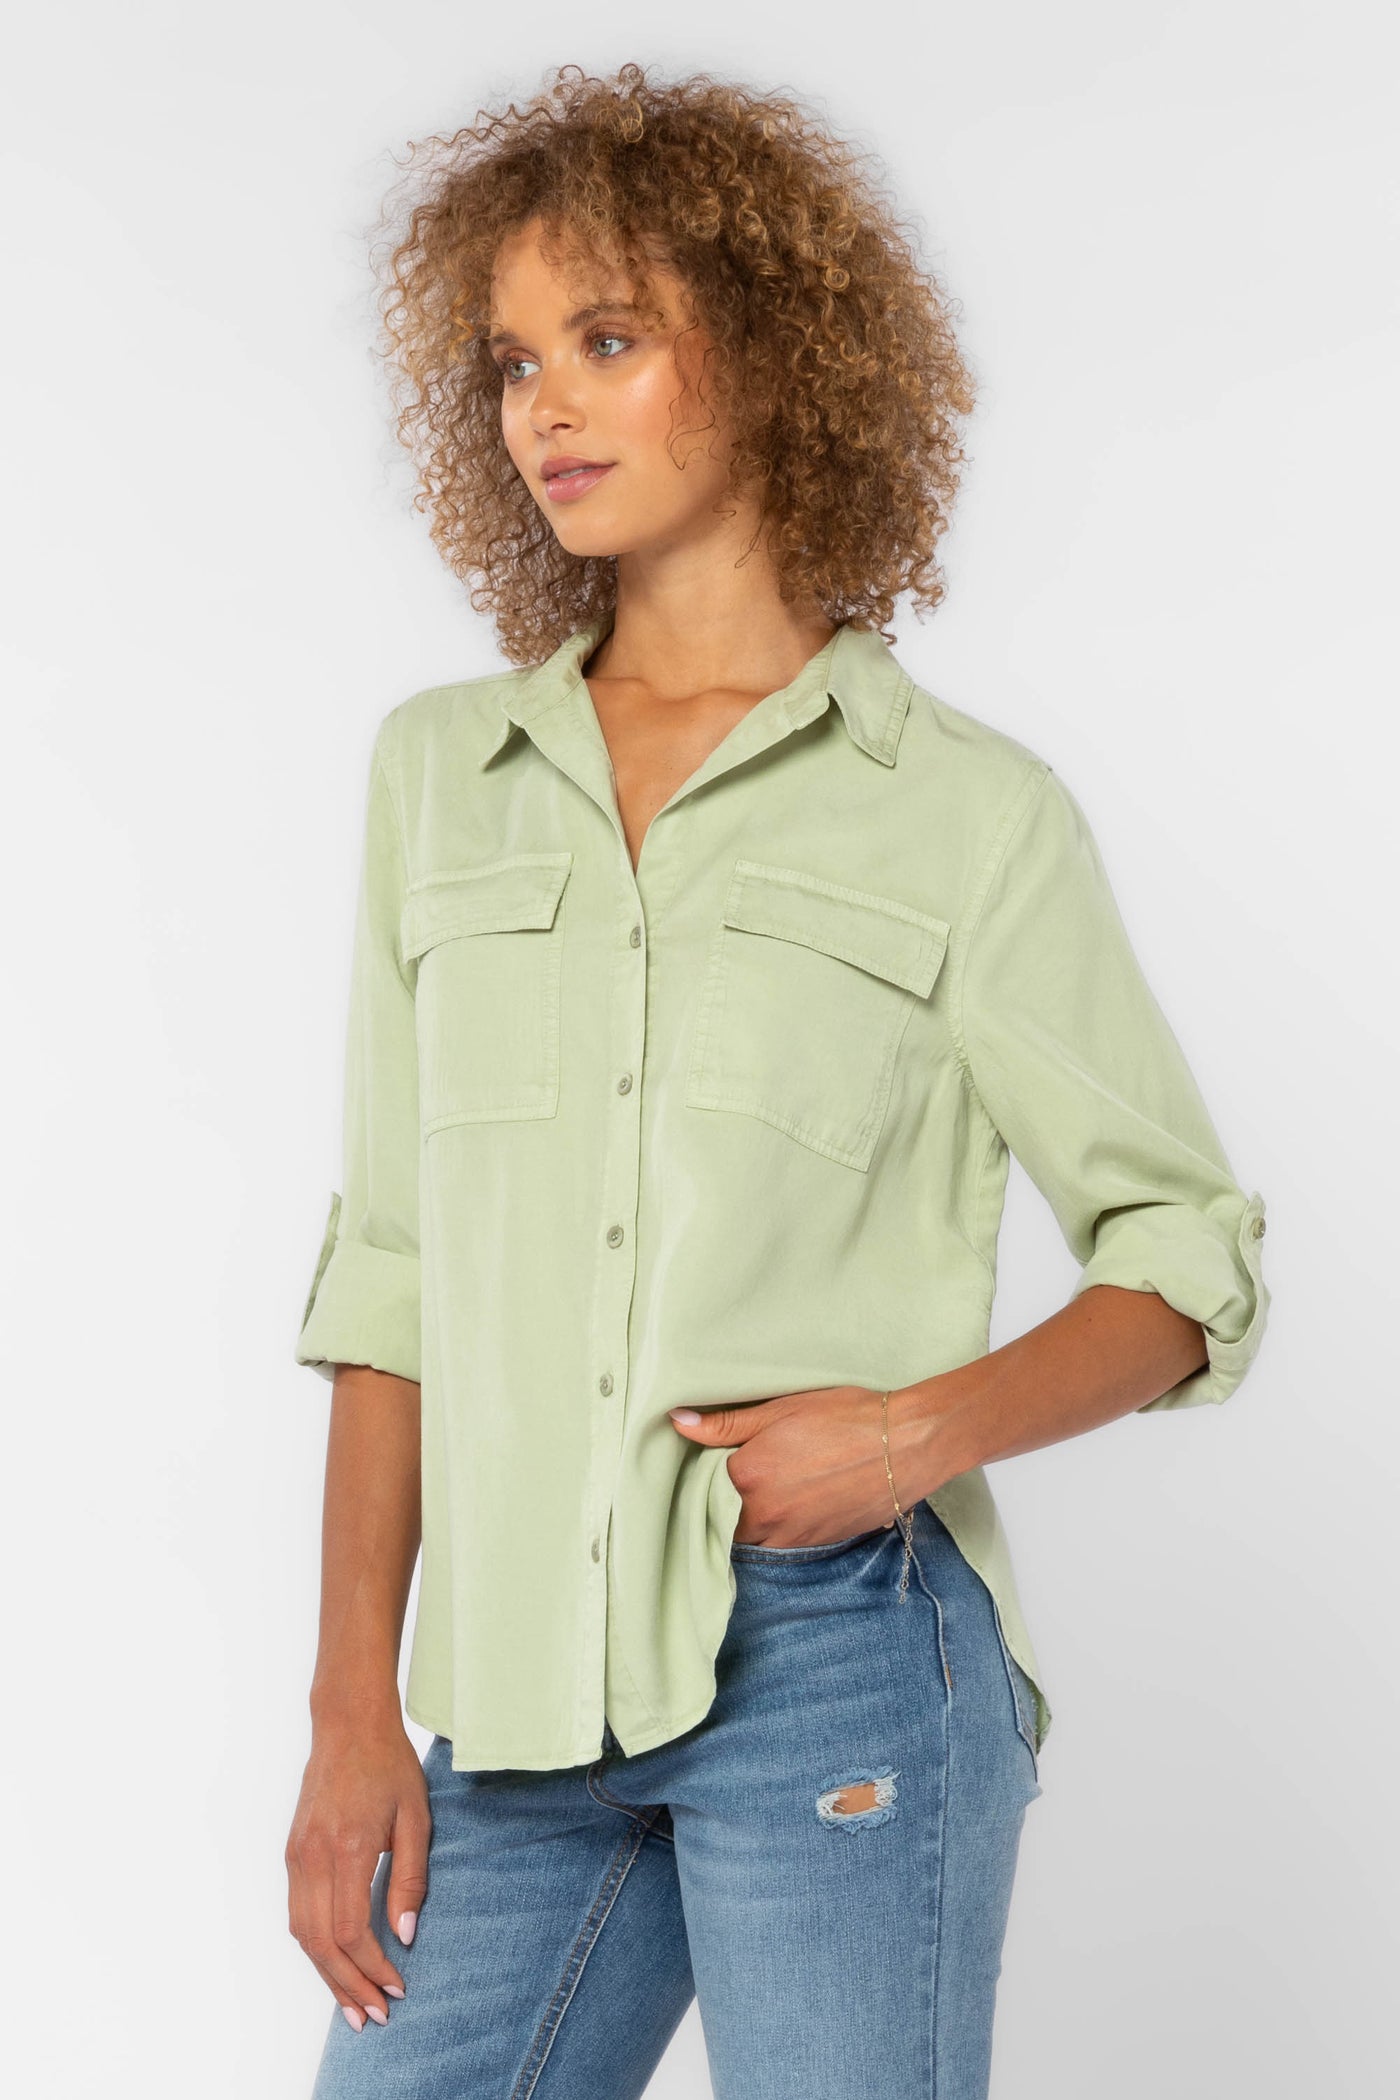 Talma Green Shirt - Tops - Velvet Heart Clothing